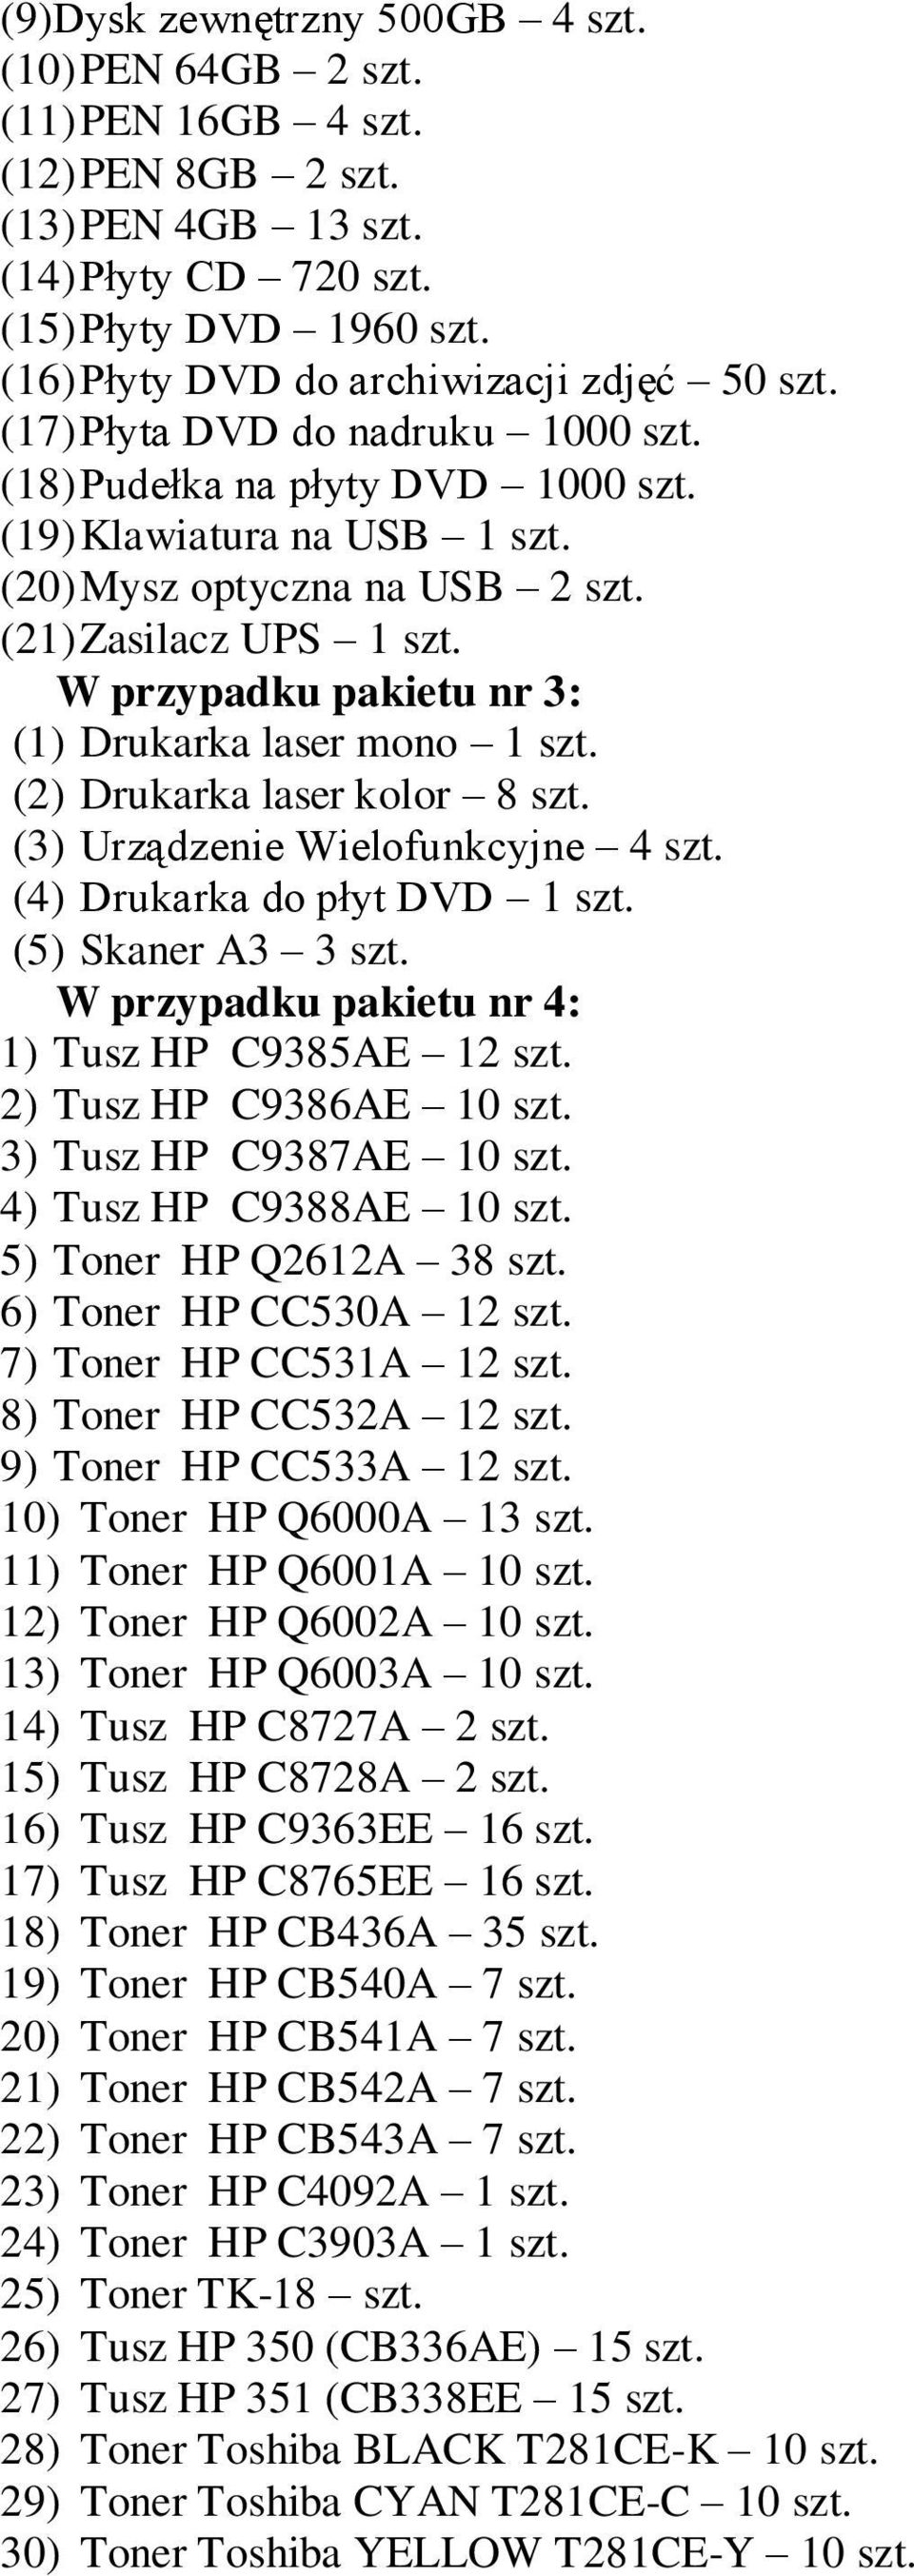 (21) Zasilacz UPS 1 szt. W przypadku pakietu nr 3: (1) Drukarka laser mono 1 szt. (2) Drukarka laser kolor 8 szt. (3) Urządzenie Wielofunkcyjne 4 szt. (4) Drukarka do płyt DVD 1 szt.